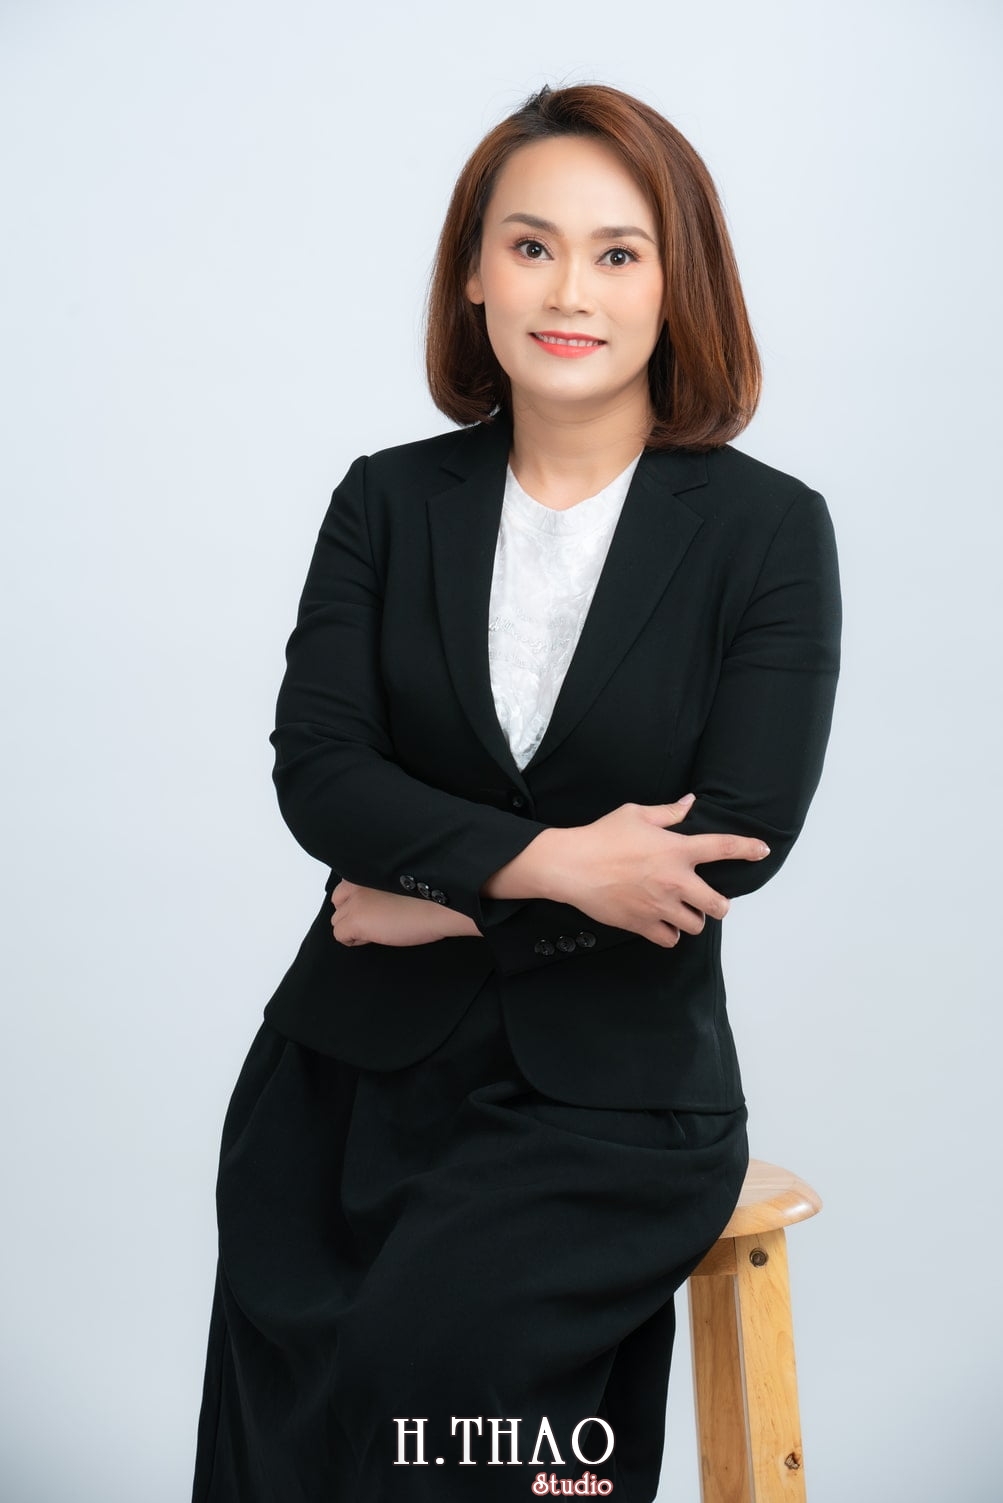 Chi Kim 6 - Album ảnh doanh nhân nữ: chị Kim đẹp nhẹ nhàng - HThao Studio